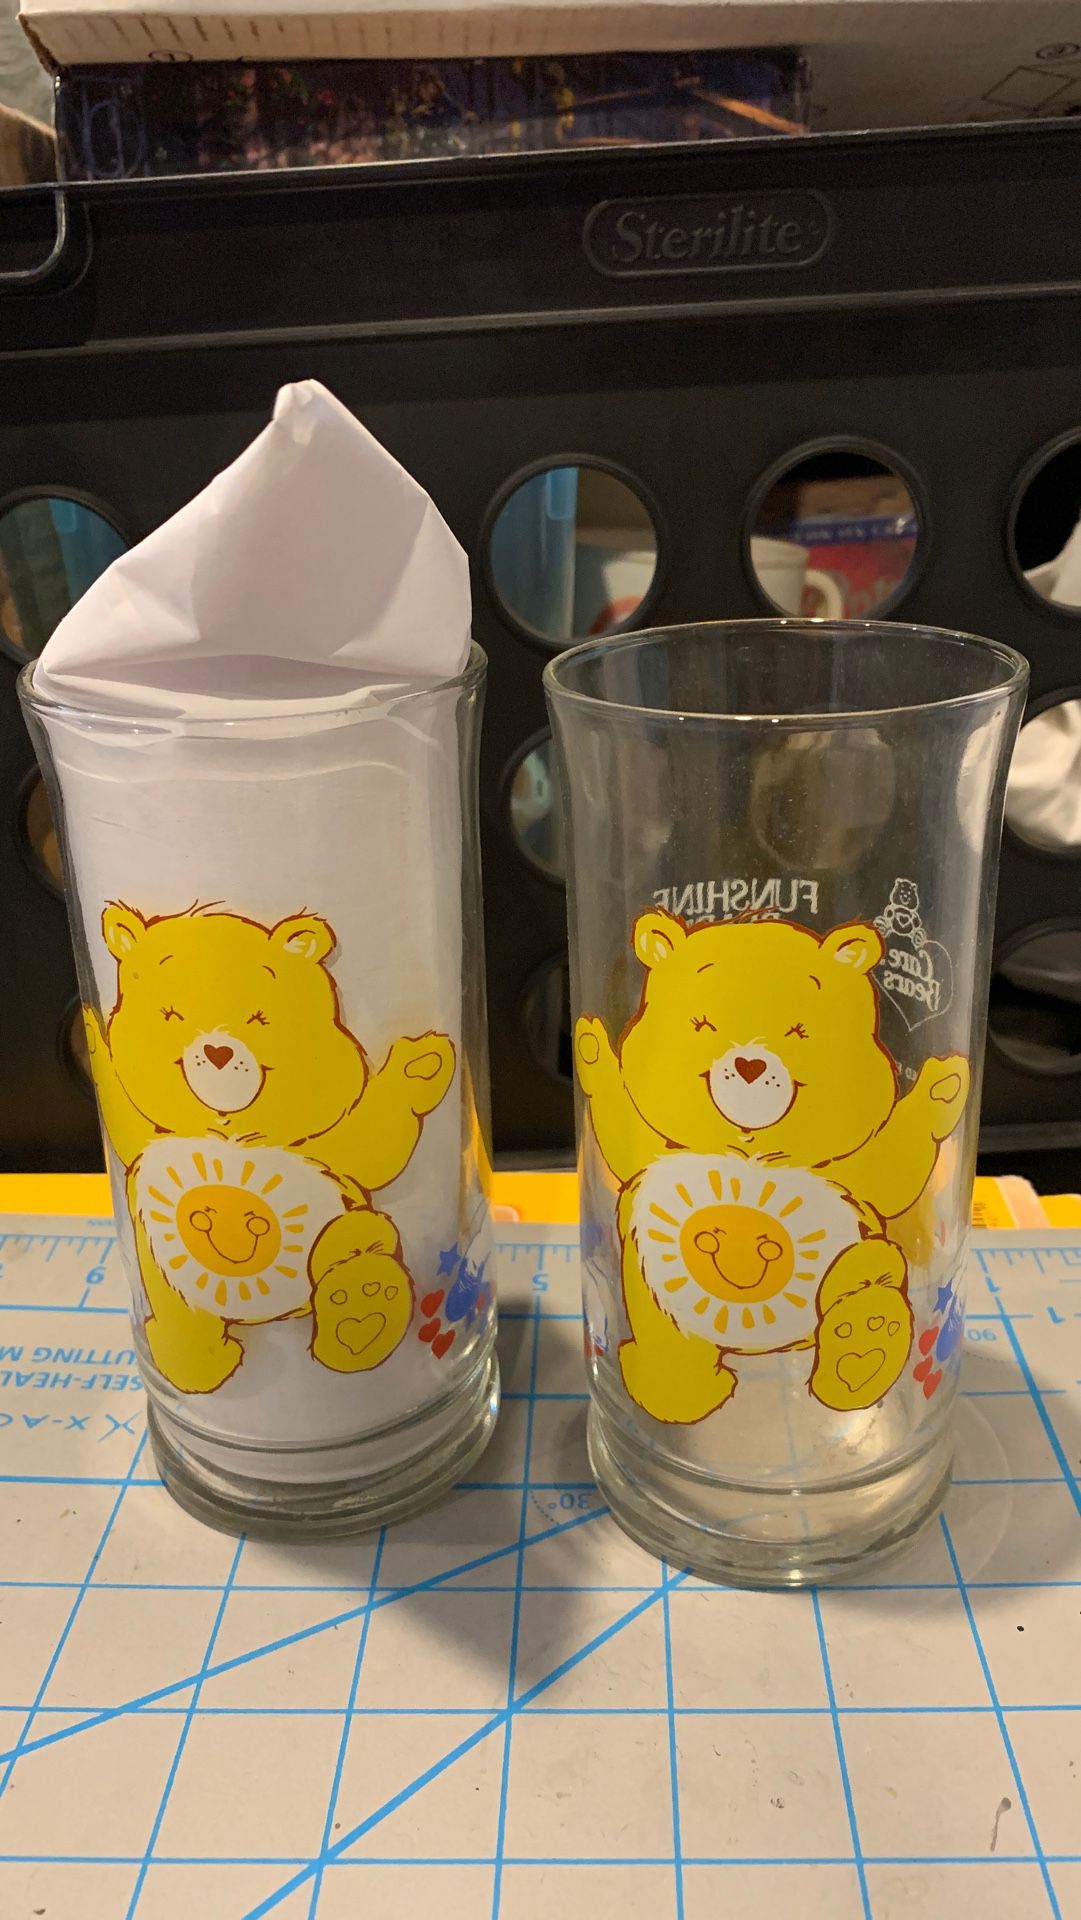 2 Care Bears glasses